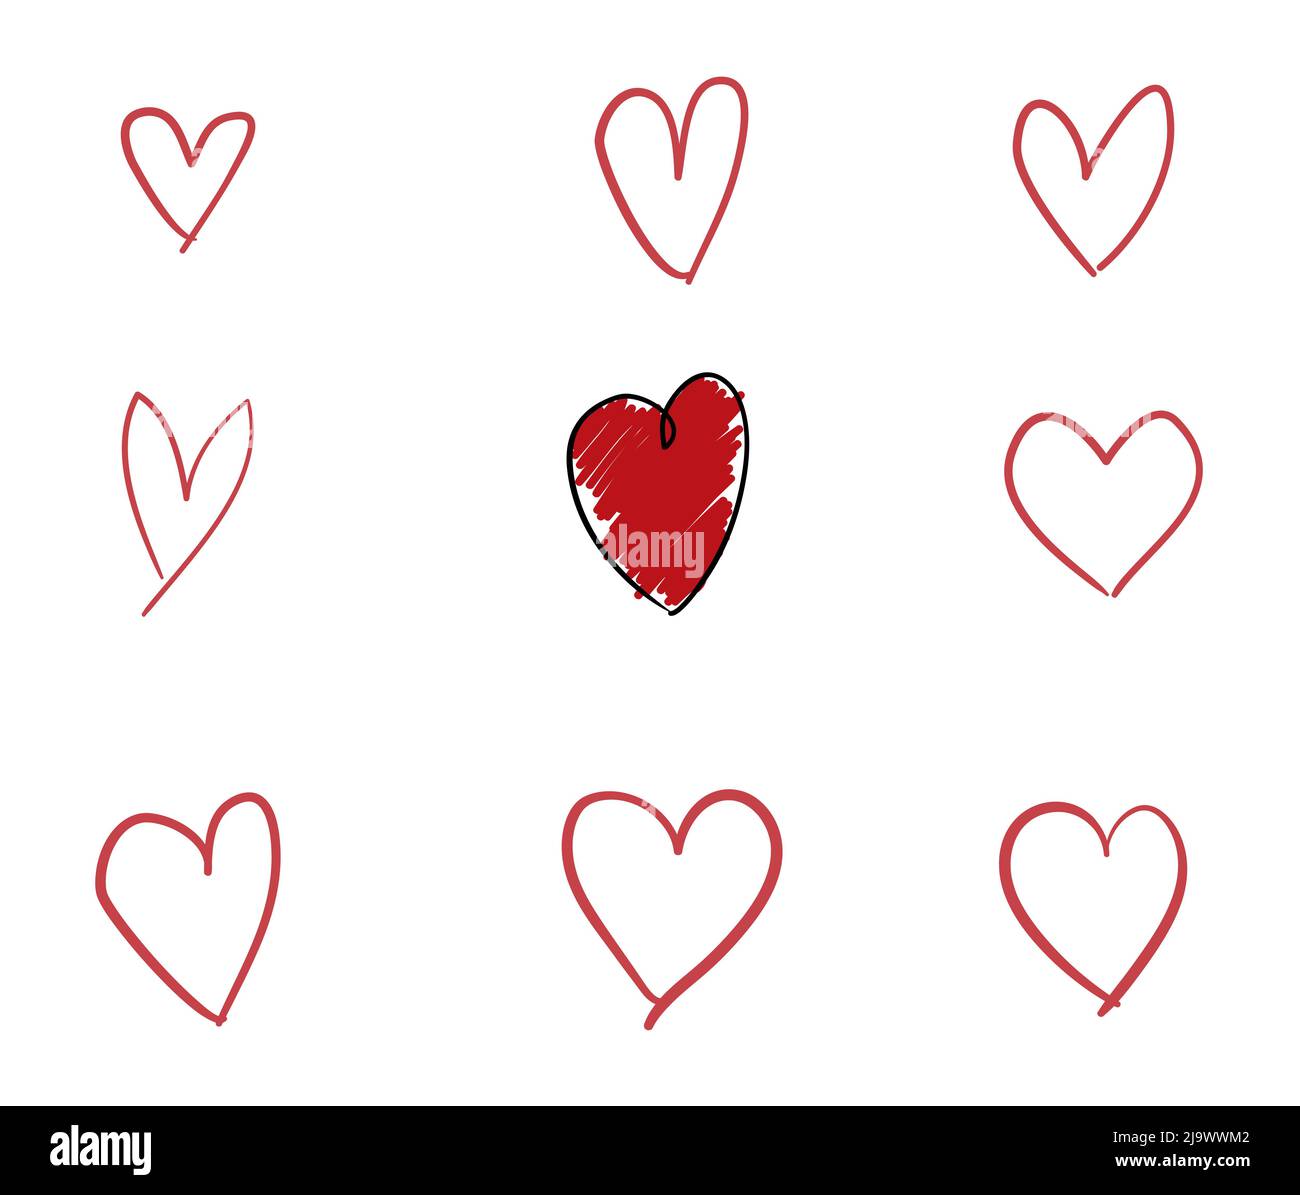 Doodle Set di diverse forme di cuore in contorni e uno colorato in rosso. Illustrazione Vettoriale